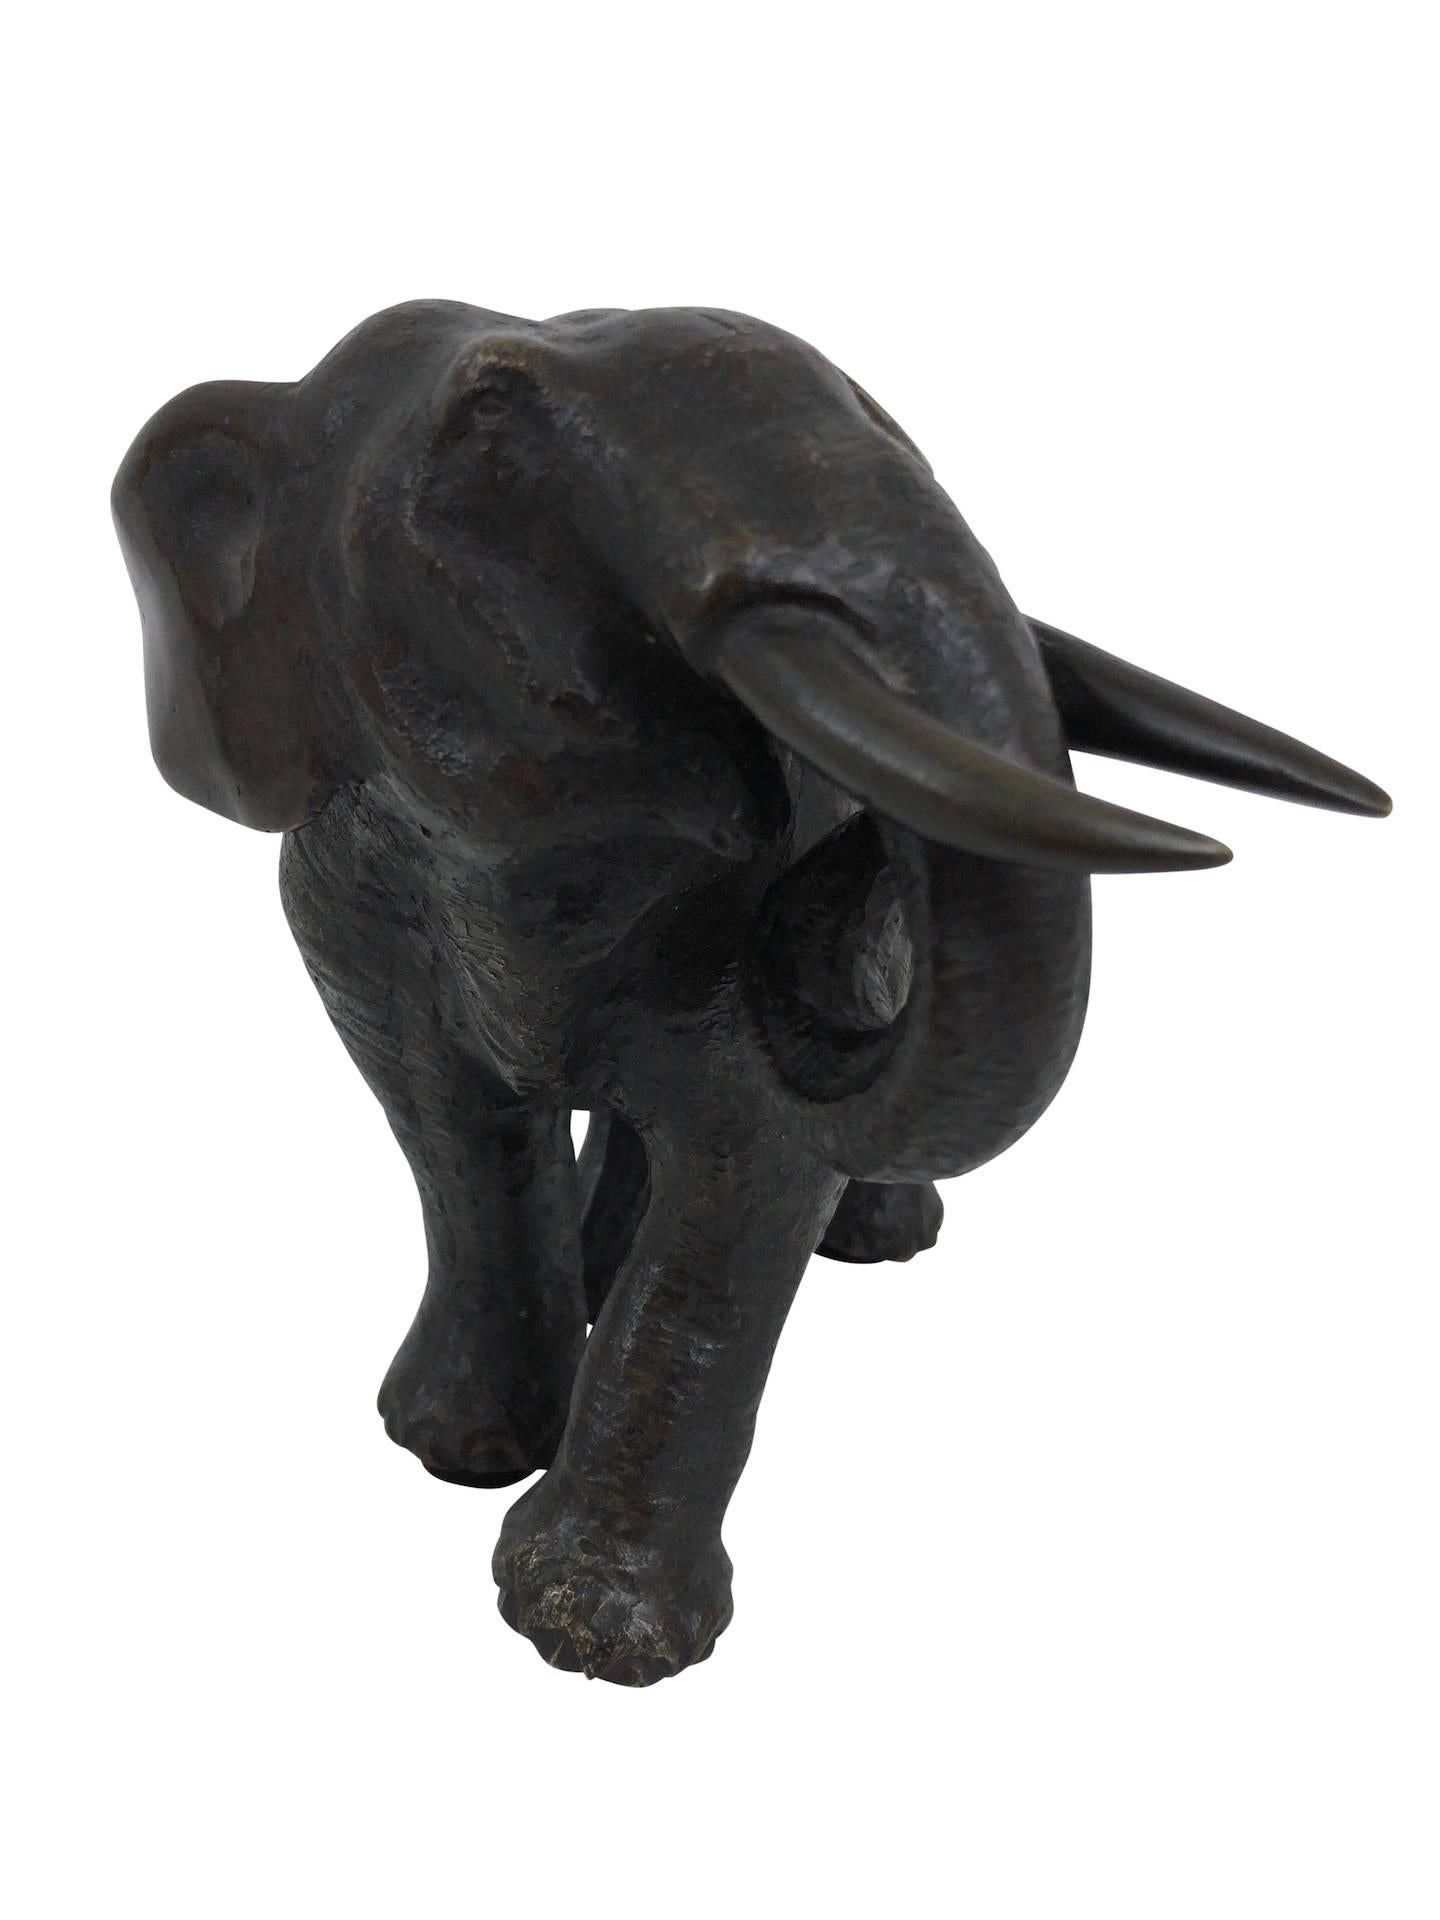 Bronzeskulptur, Elefant, Asien, um 1900
Bronze mit originaler Patina

Abmessungen:
Breite 20 cm
Höhe 15,5 cm
Tiefe 13 cm.